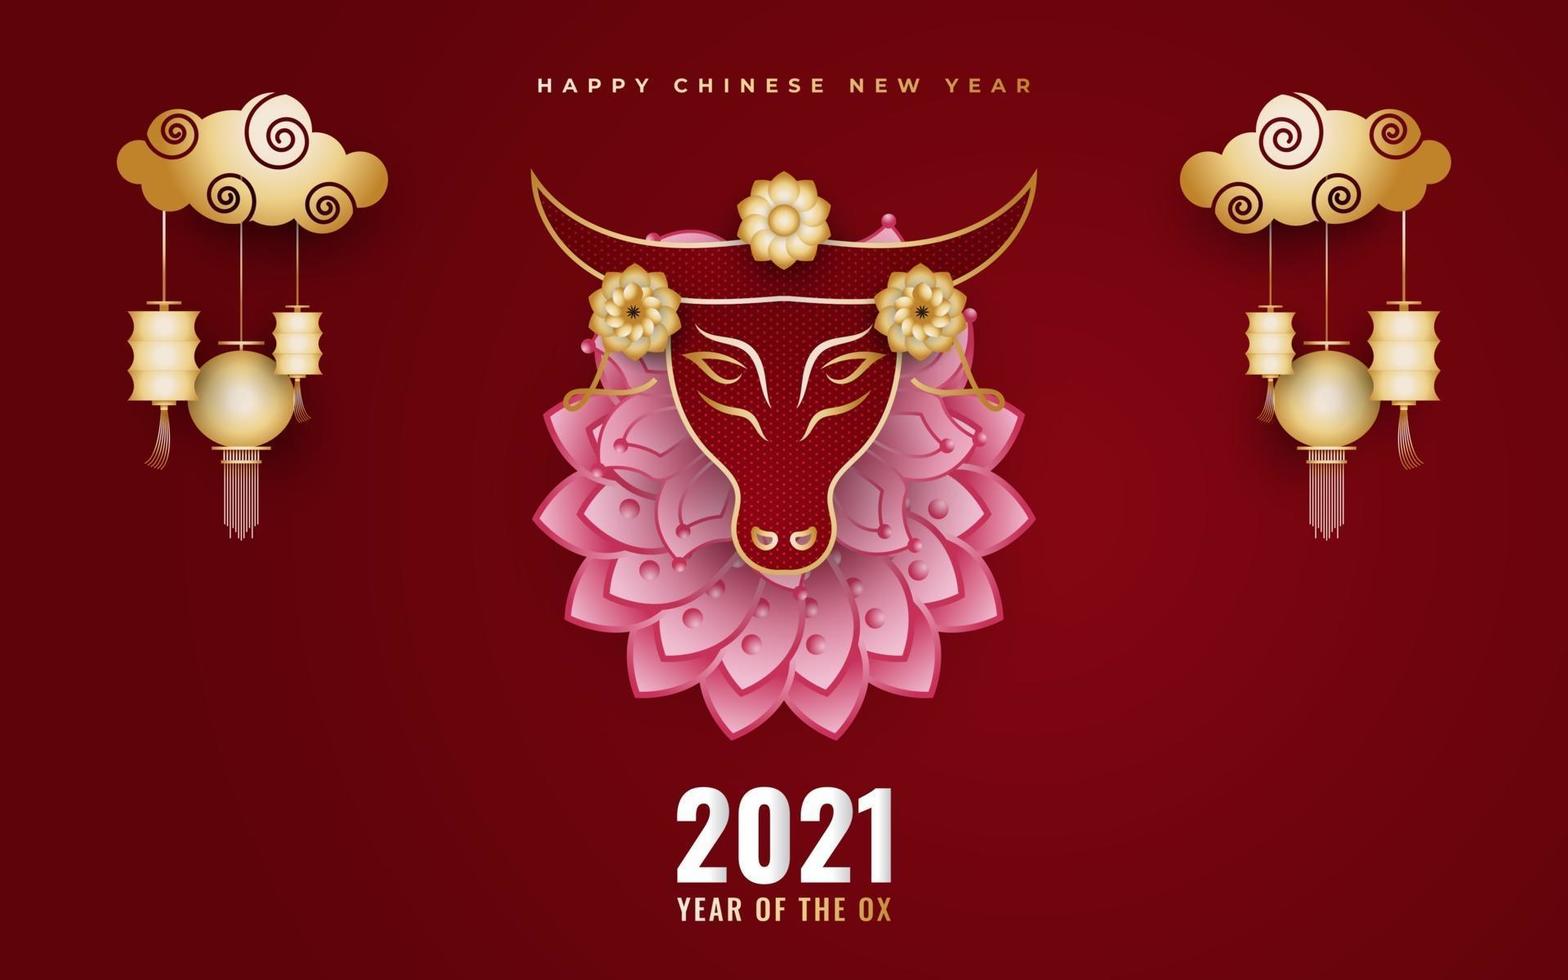 nouvel an chinois 2021 année du bœuf vecteur